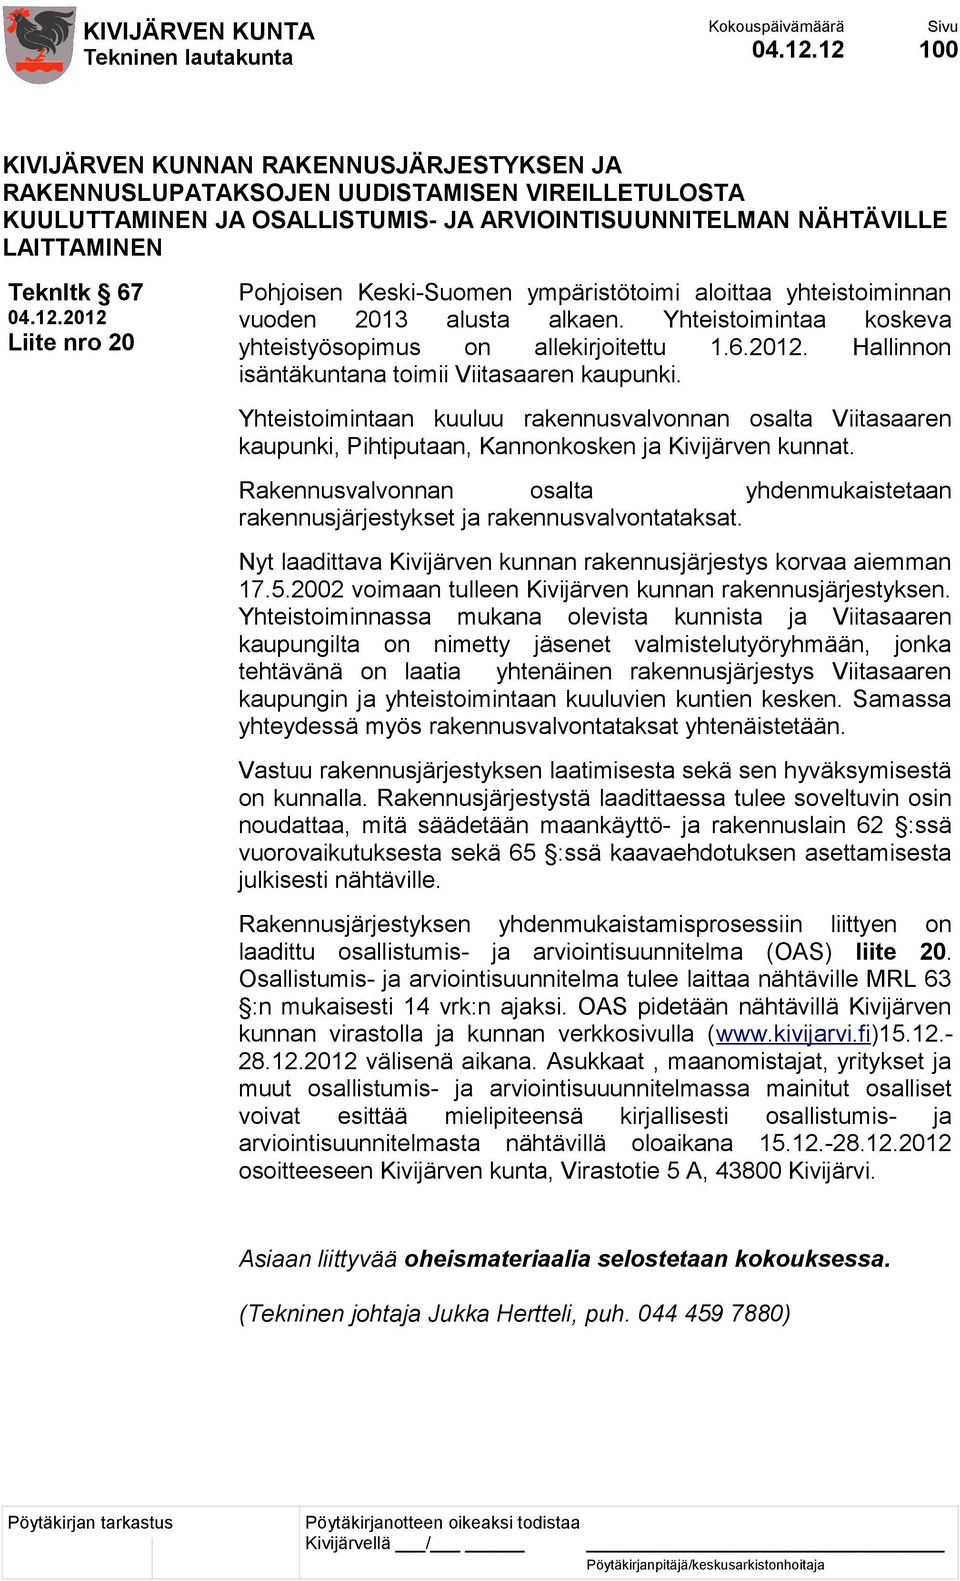 20 Pohjoisen Keski-Suomen ympäristötoimi aloittaa yhteistoiminnan vuoden 2013 alusta alkaen. Yhteistoimintaa koskeva yhteistyösopimus on allekirjoitettu 1.6.2012.